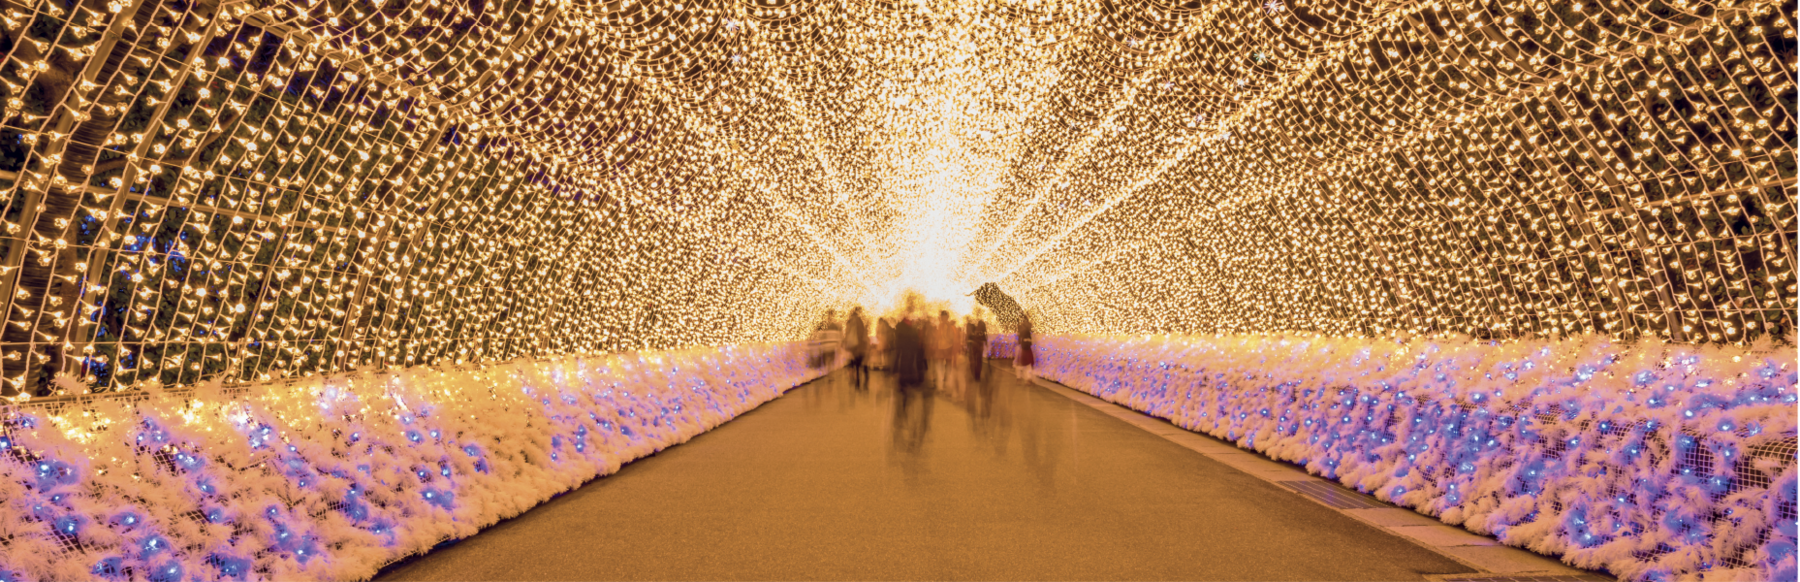 Fotografia. Um túnel iluminado com milhares de luzinhas brilhantes douradas. Nas laterais, próximo ao chão, há milhares de flores brancas e com luzinhas azuis. Legenda: Nabana no Sato's winter illumination Festival at Nabana no Sato park, in Kuwana, Japan.